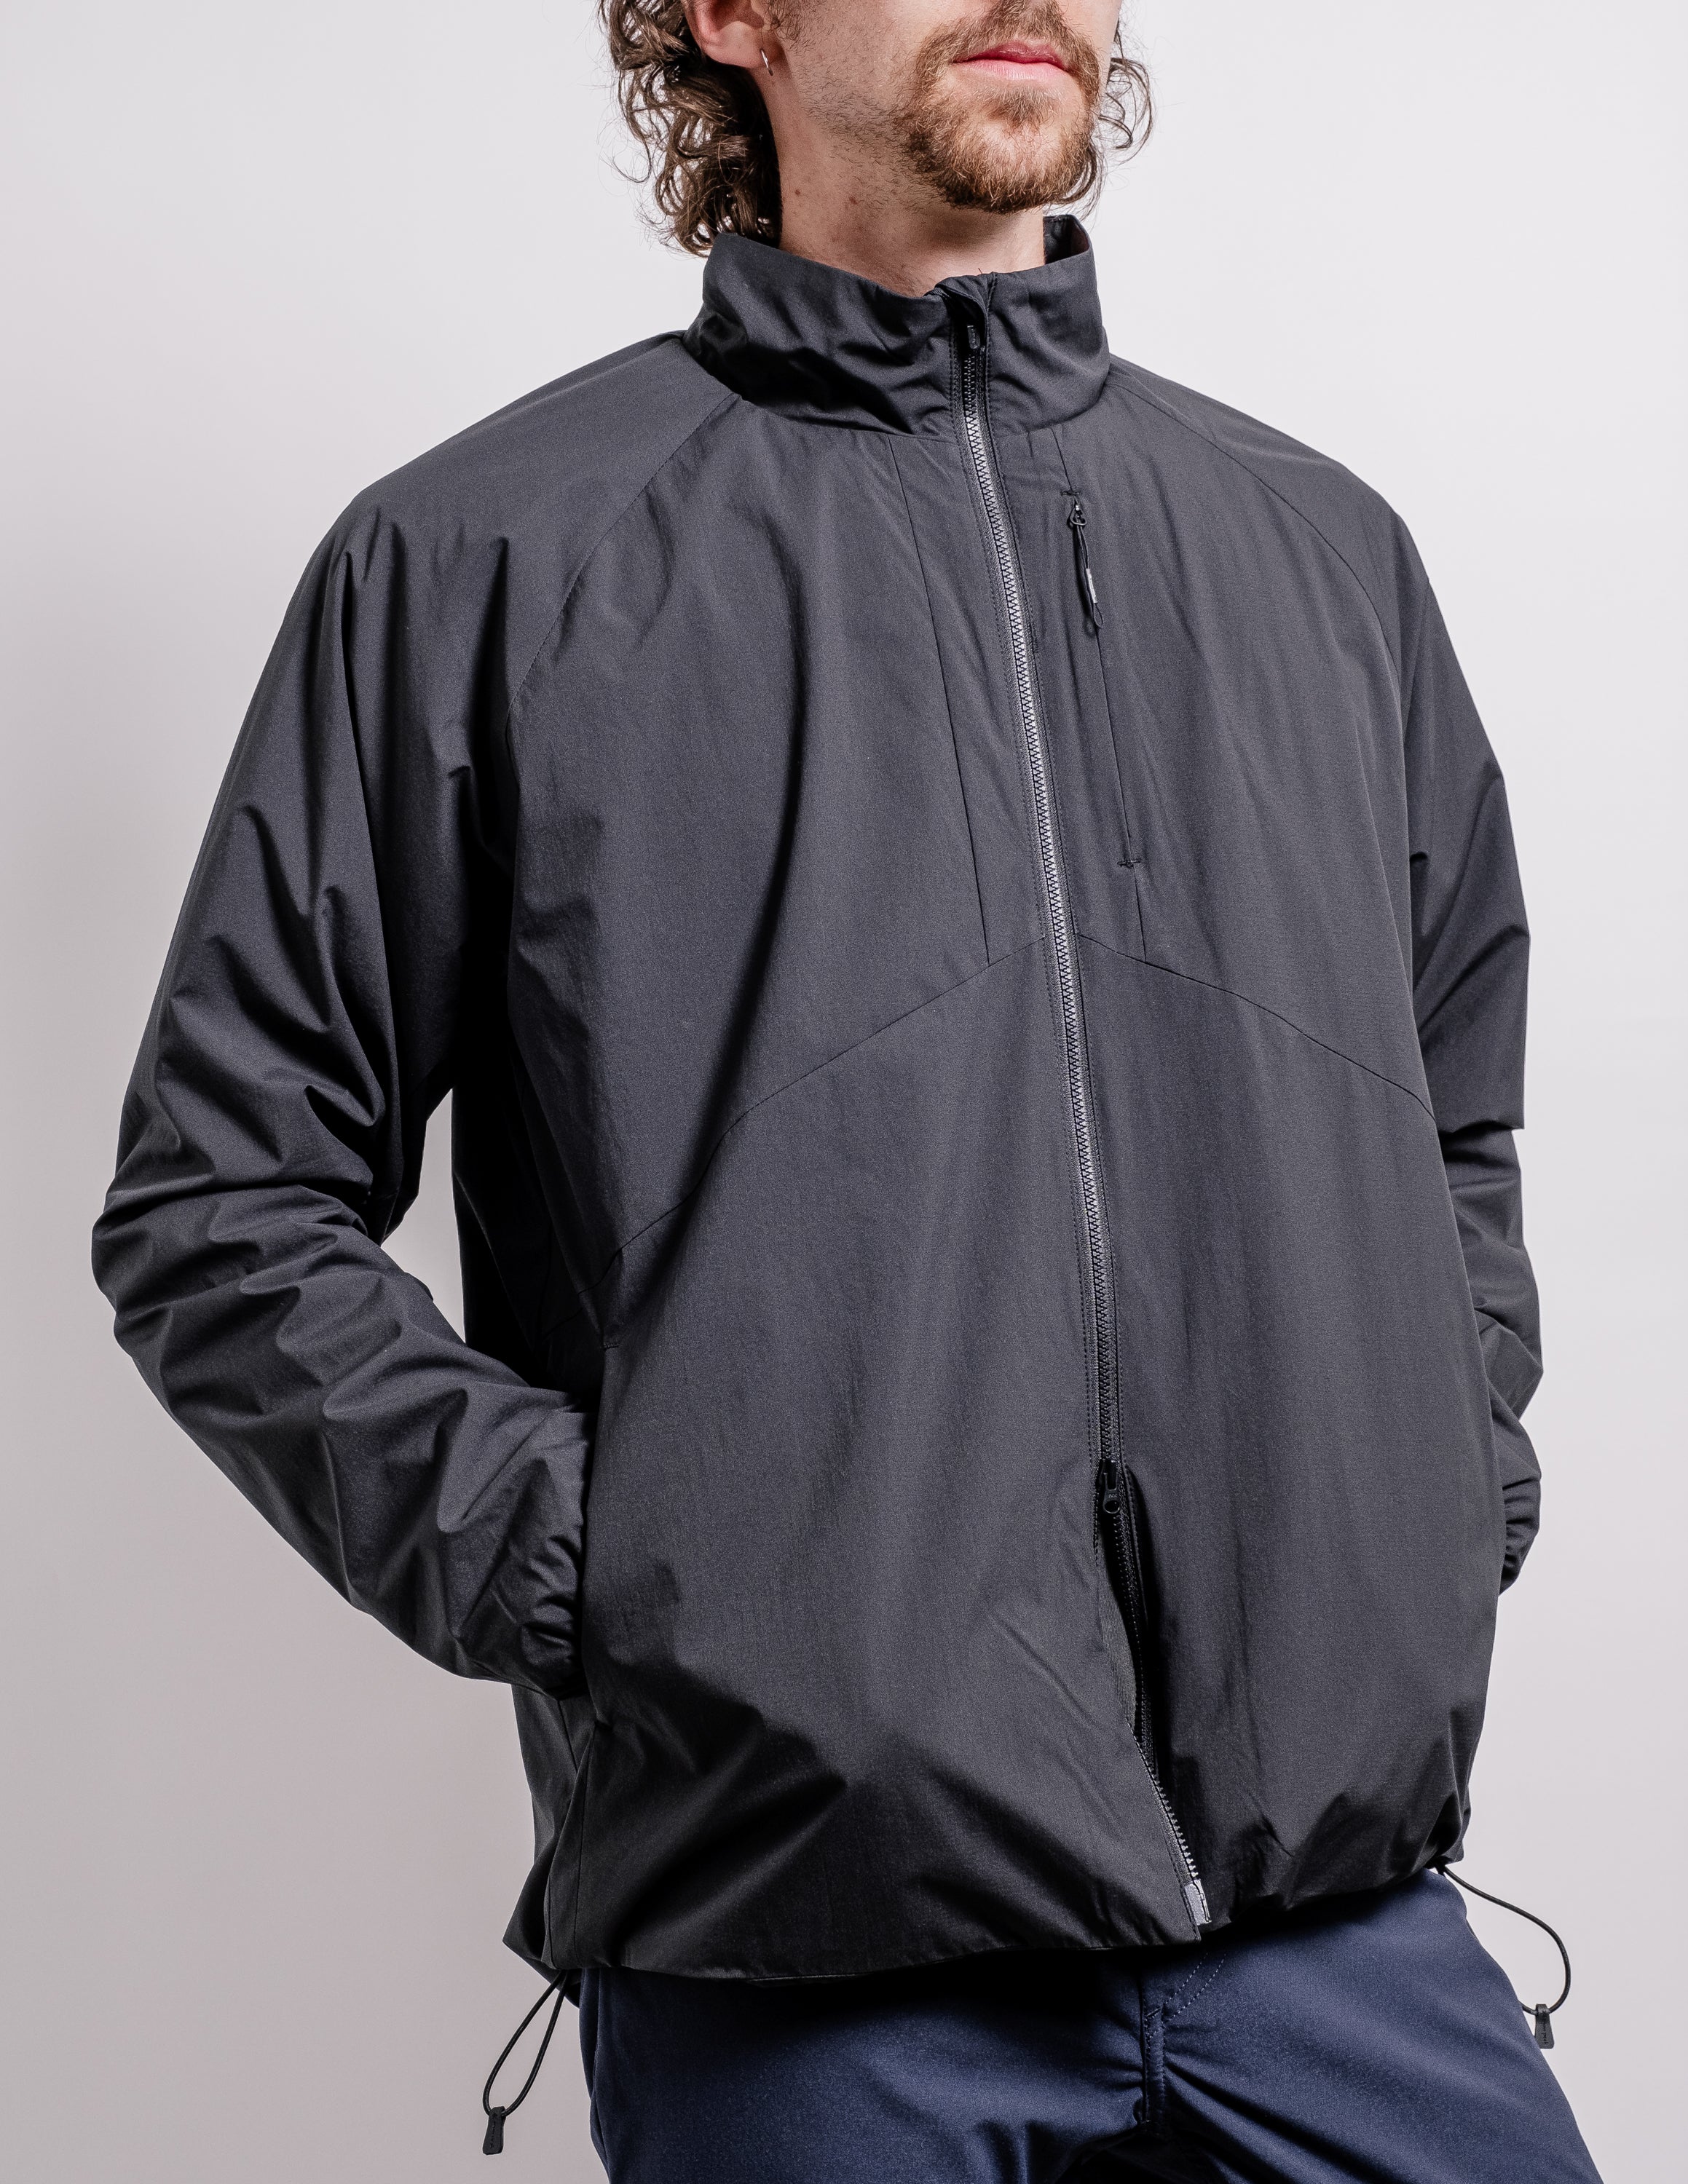 NEW MENS CROSSHATCH PLIXXIE JACKET PADDED DESIGNER BLACK RIBBED WINTER ZIP  COAT[Black ,S] : Amazon.co.uk: Fashion